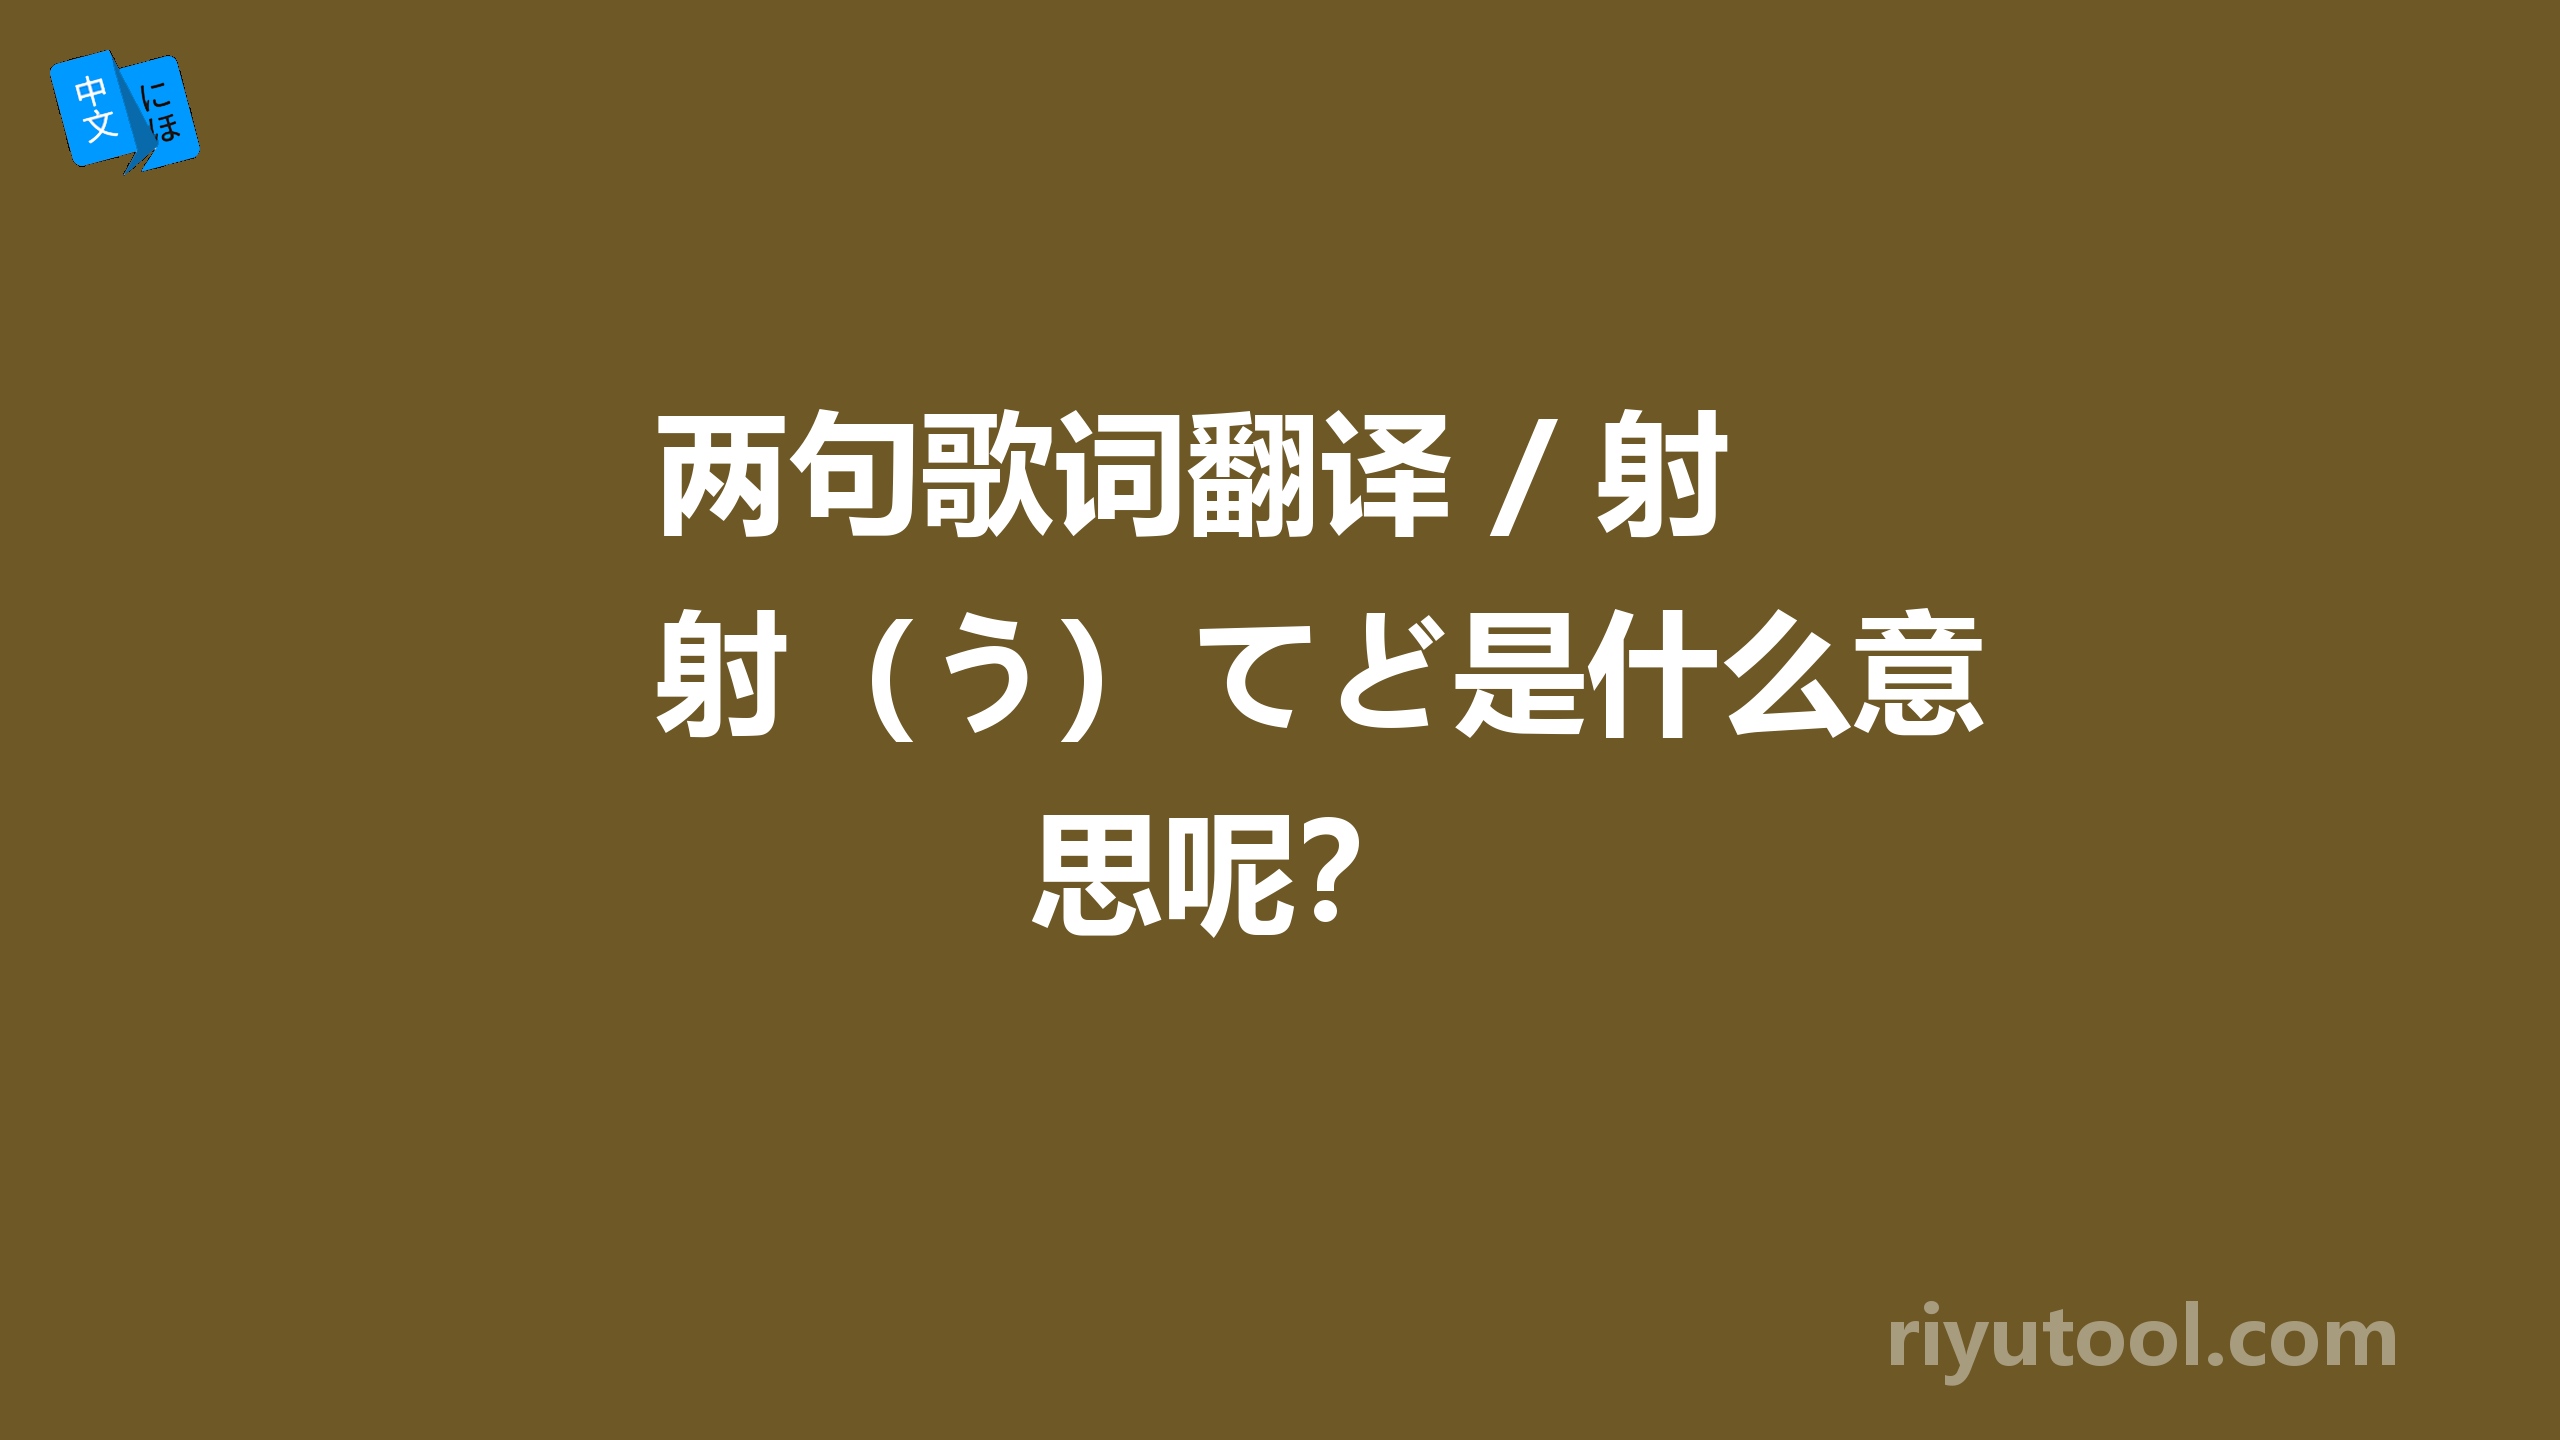 两句歌词翻译 / 射（う）てど是什么意思呢？ 